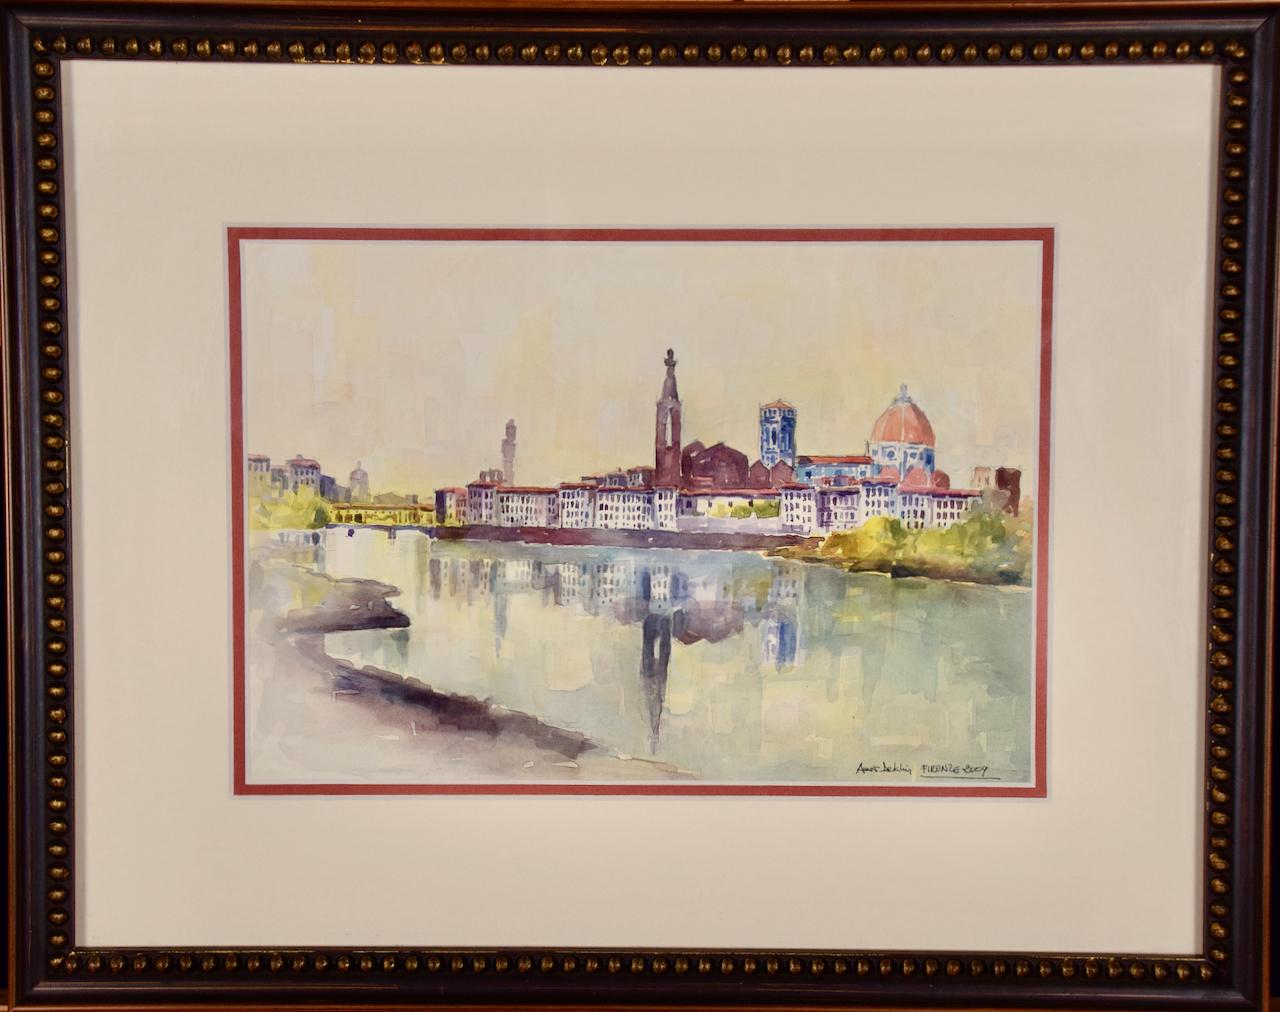 Voici une belle aquarelle colorée de Florence, en Italie, intitulée "Firenze 2009" par Amos Deklin. Elle est signée par l'artiste en bas à droite. La scène représente la ville de Florence vue depuis la rive opposée de l'Arno, vraisemblablement